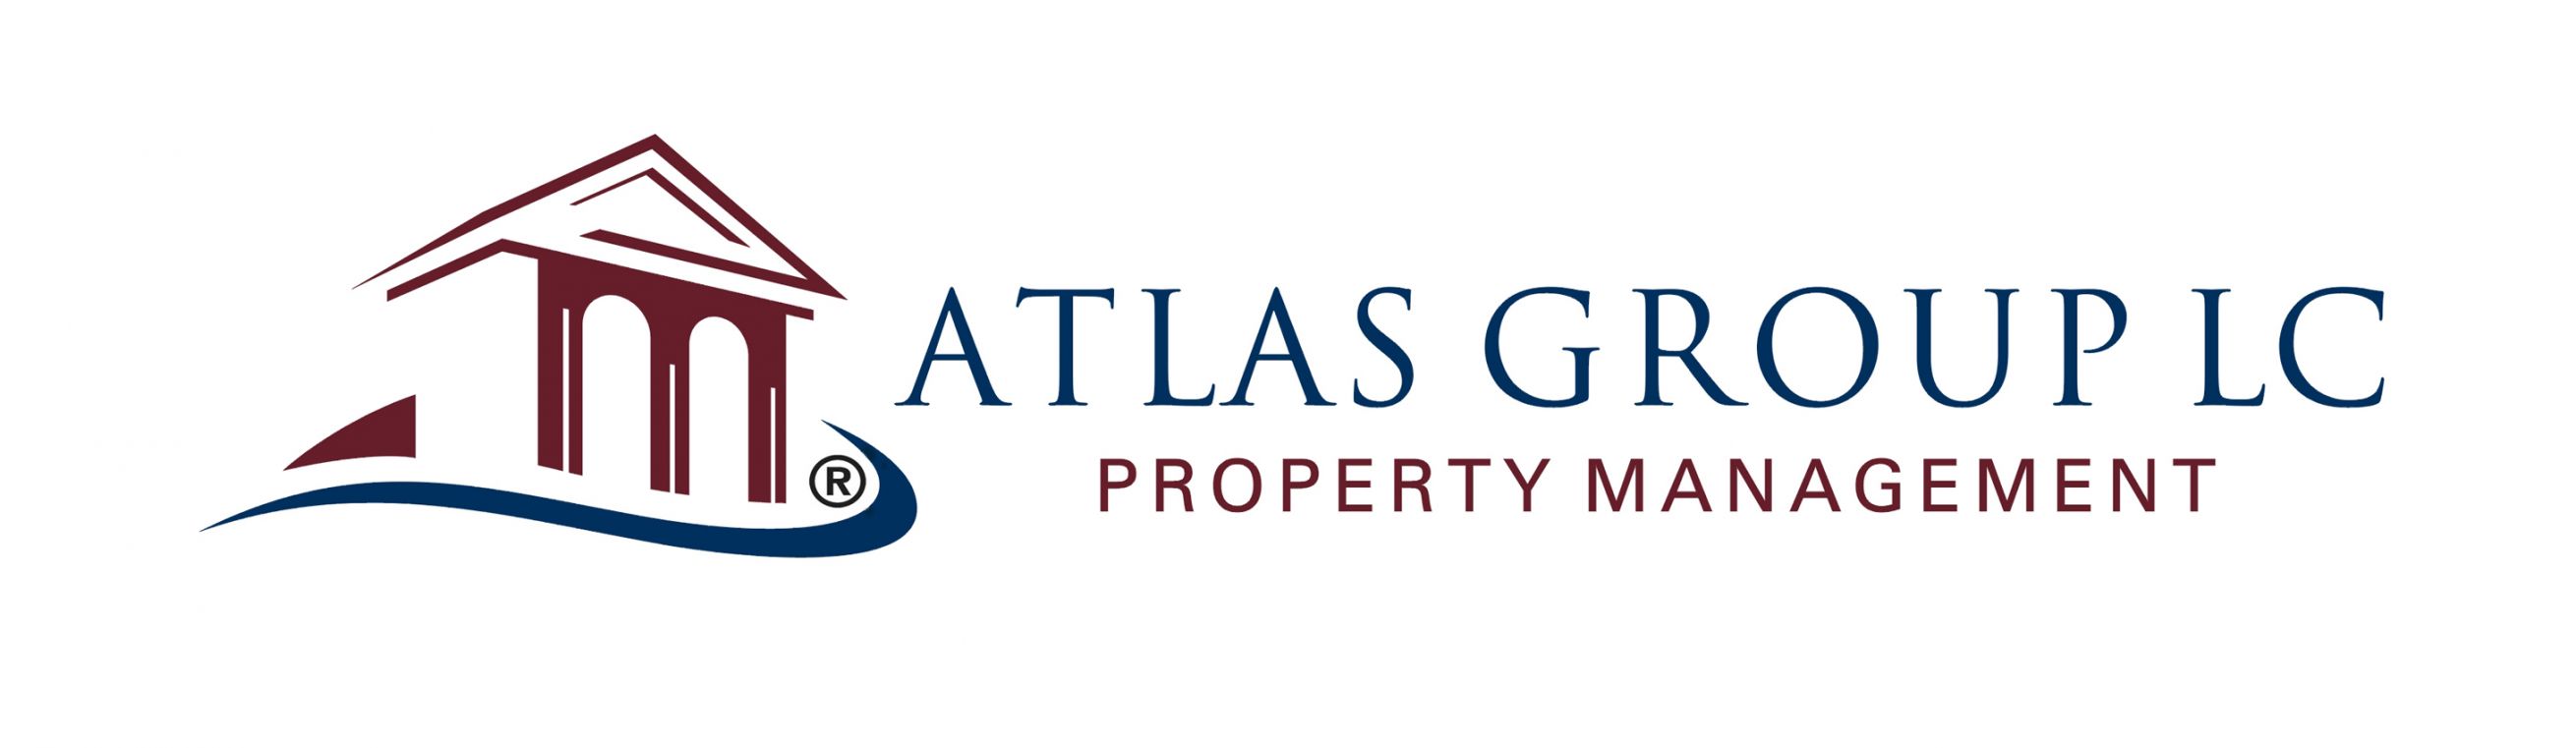 Atlas Group LC - Las Vegas Property Management